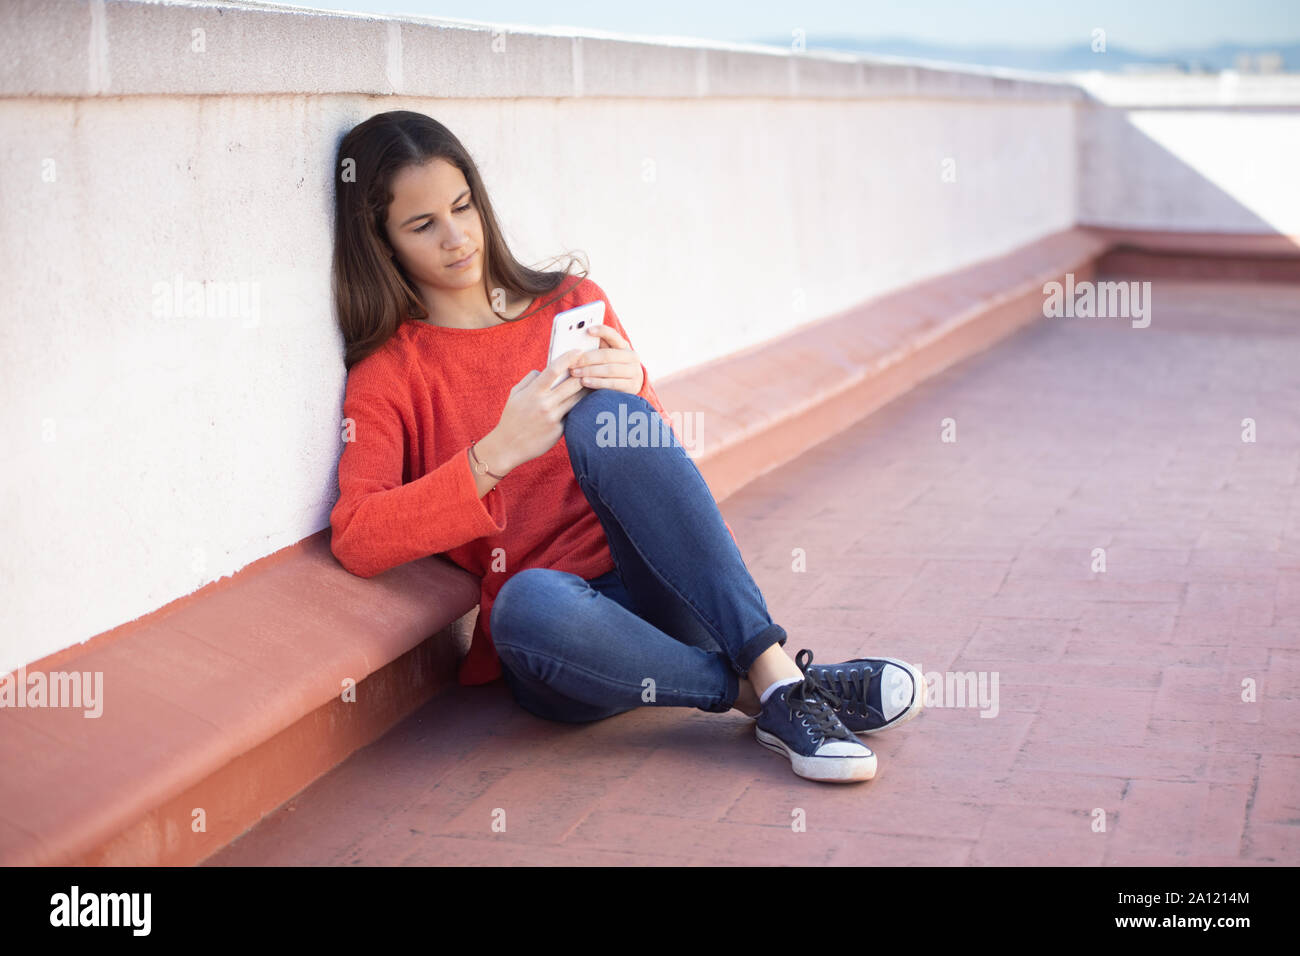 Chica adolescente mirando el smartphone sentada en la azotea Foto Stock